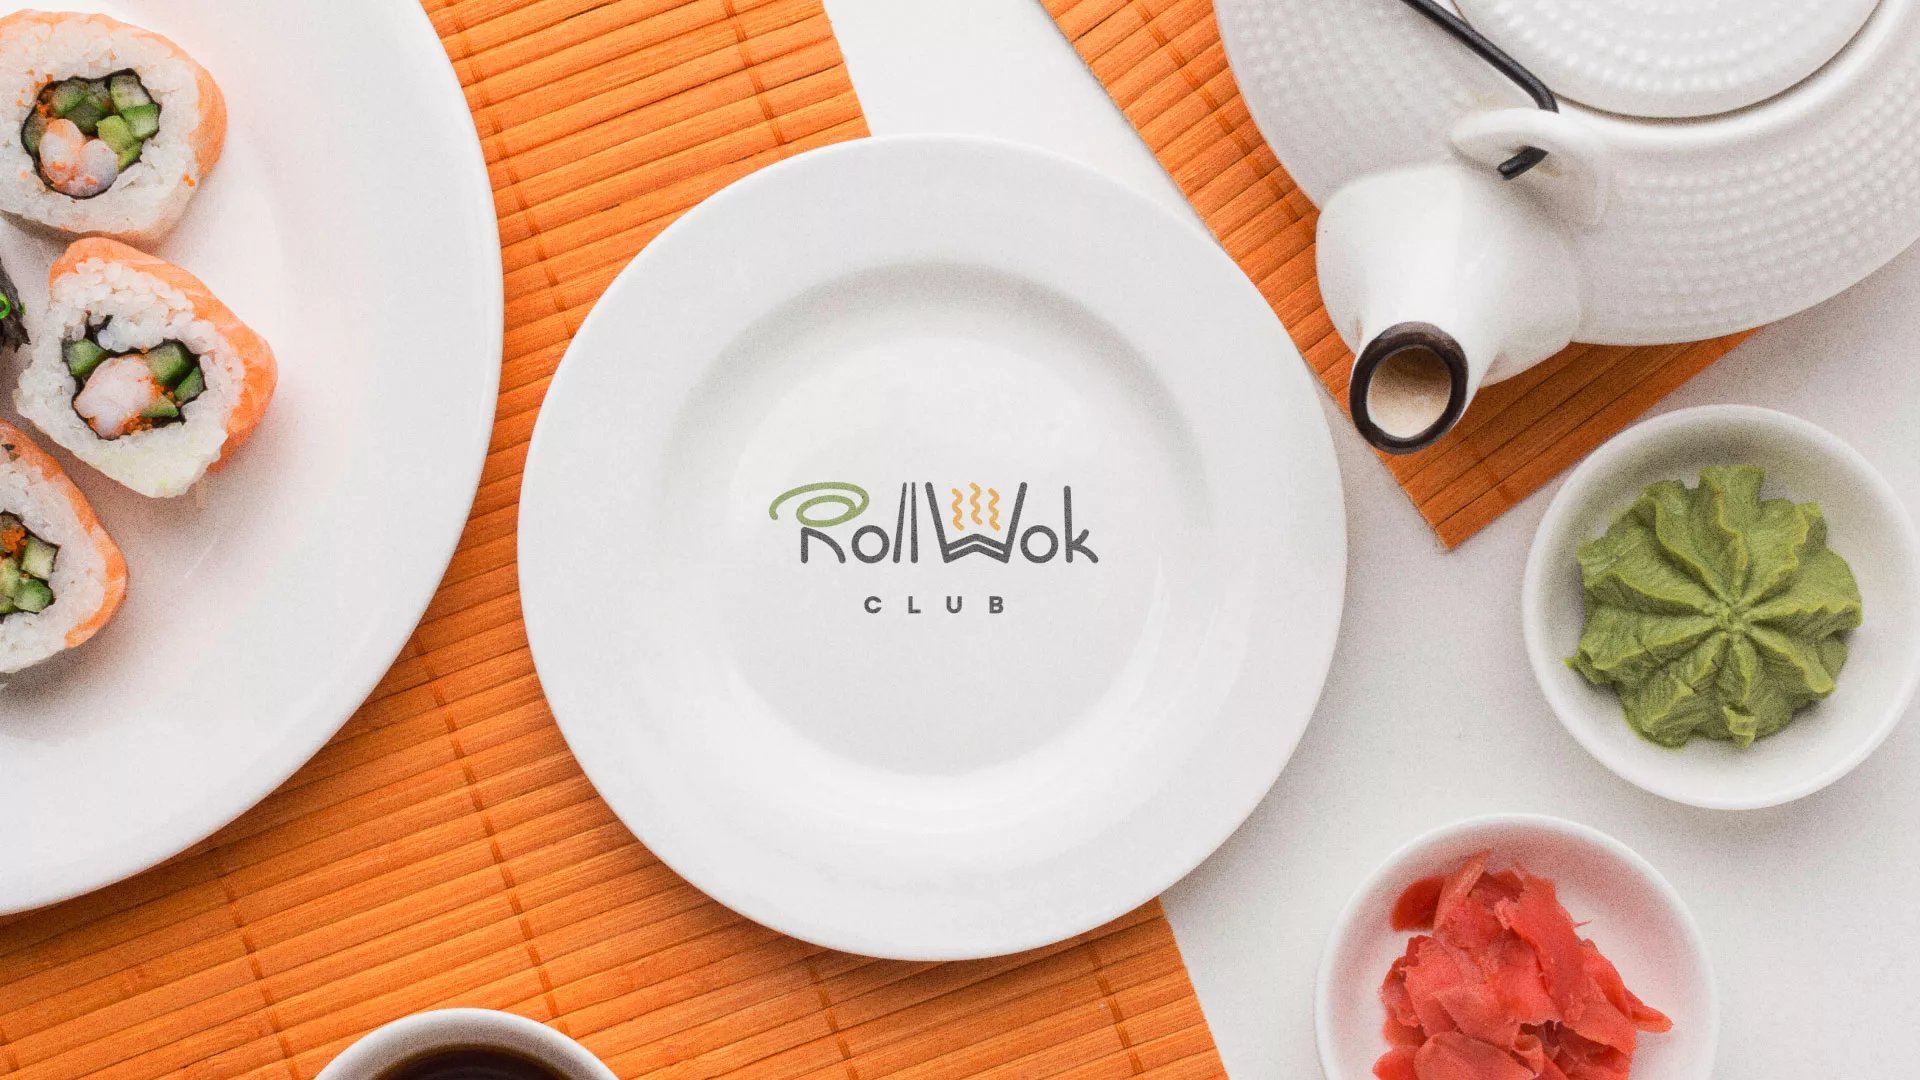 Разработка логотипа и фирменного стиля суши-бара «Roll Wok Club» в Полярном